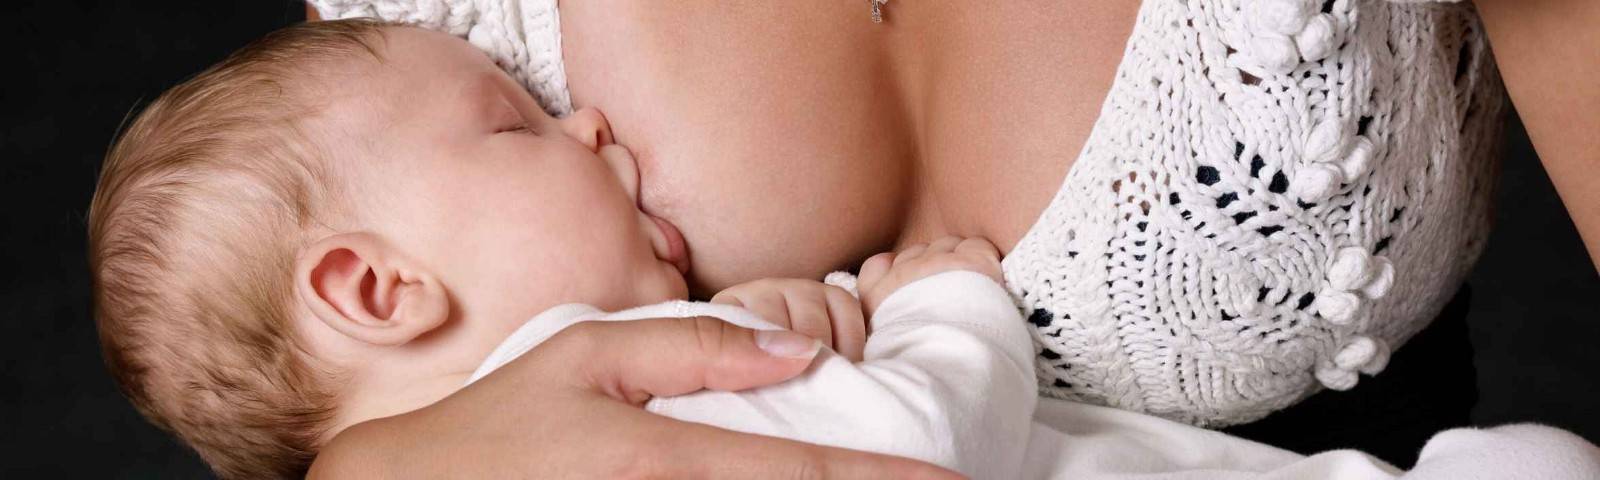 Три способа отнять ребёнка от груди от врача-педиатра